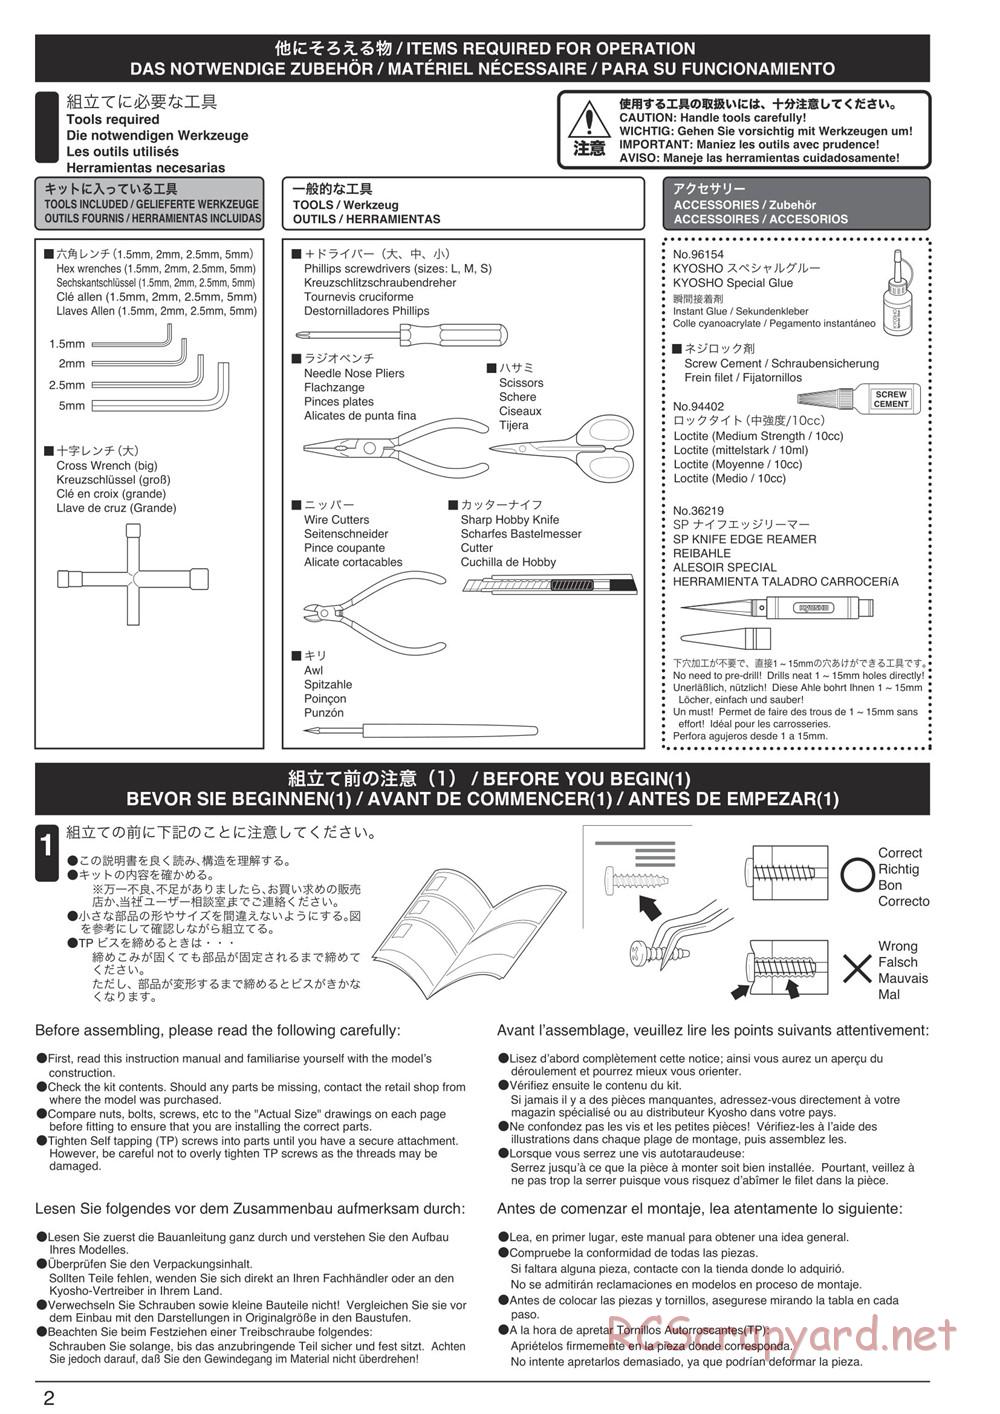 Kyosho - DBX-VE - Manual - Page 2